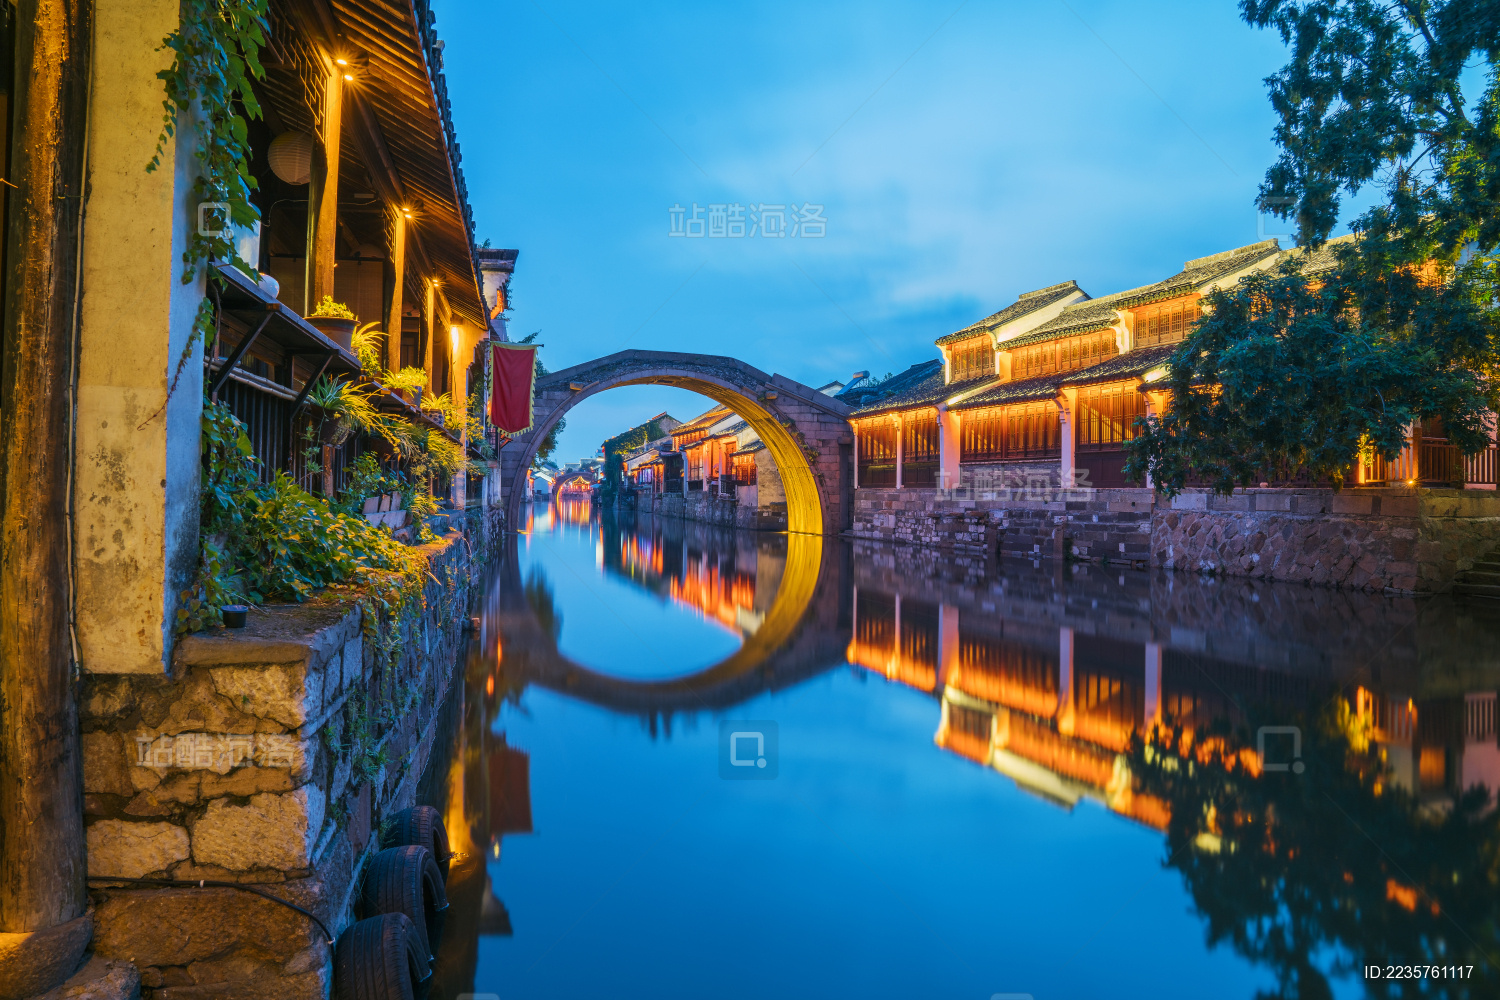 The Night Beauty Of The Ancient Town Of Nanxun Huzhou Zhejiang Picture ...